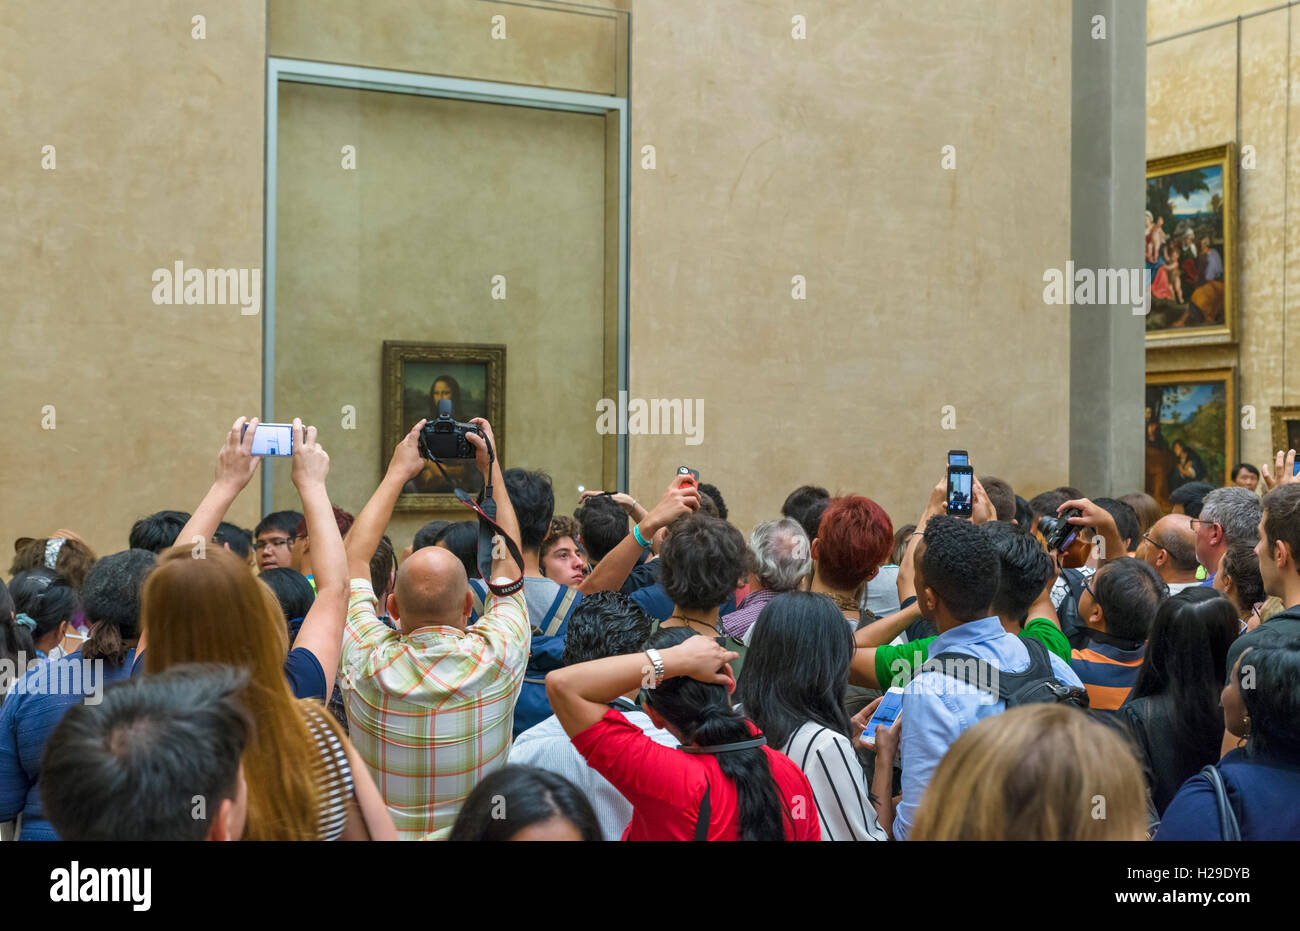 Mona Lisa. Foule de visiteurs d'essayer de photographier la Joconde de Léonard de Vinci, Musée du Louvre, Paris, France Banque D'Images